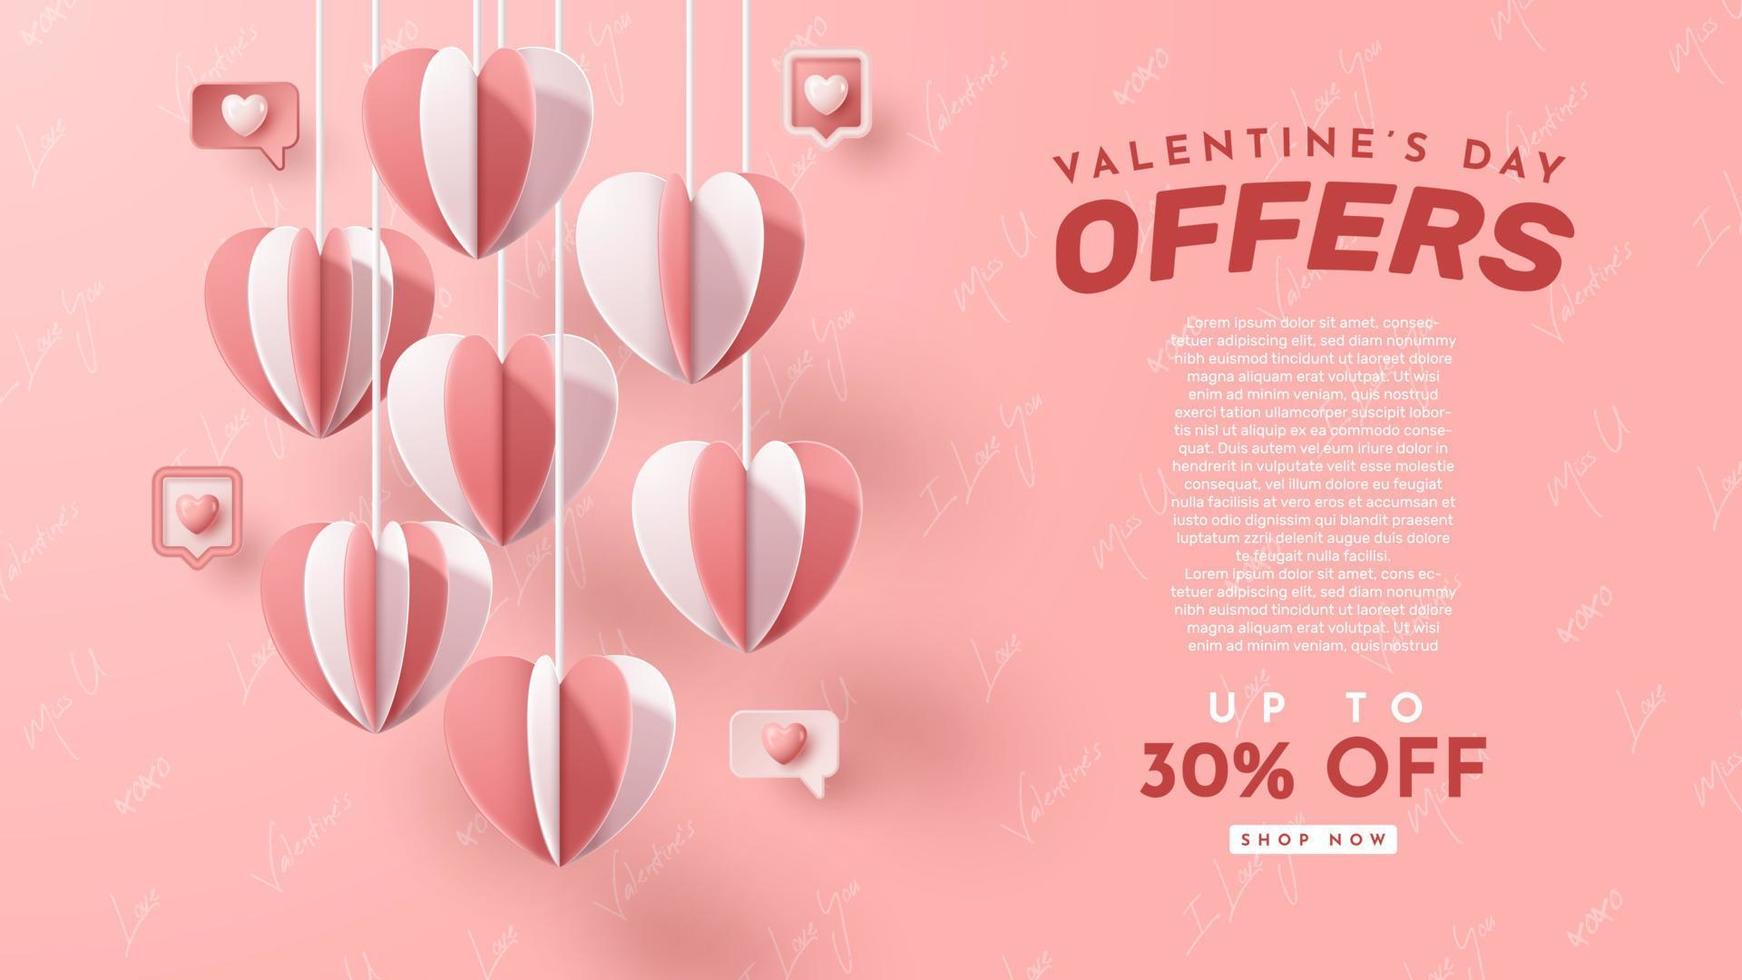 presentación de productos 3d del día de san valentín para banner, publicidad y negocios. ilustración vectorial vector